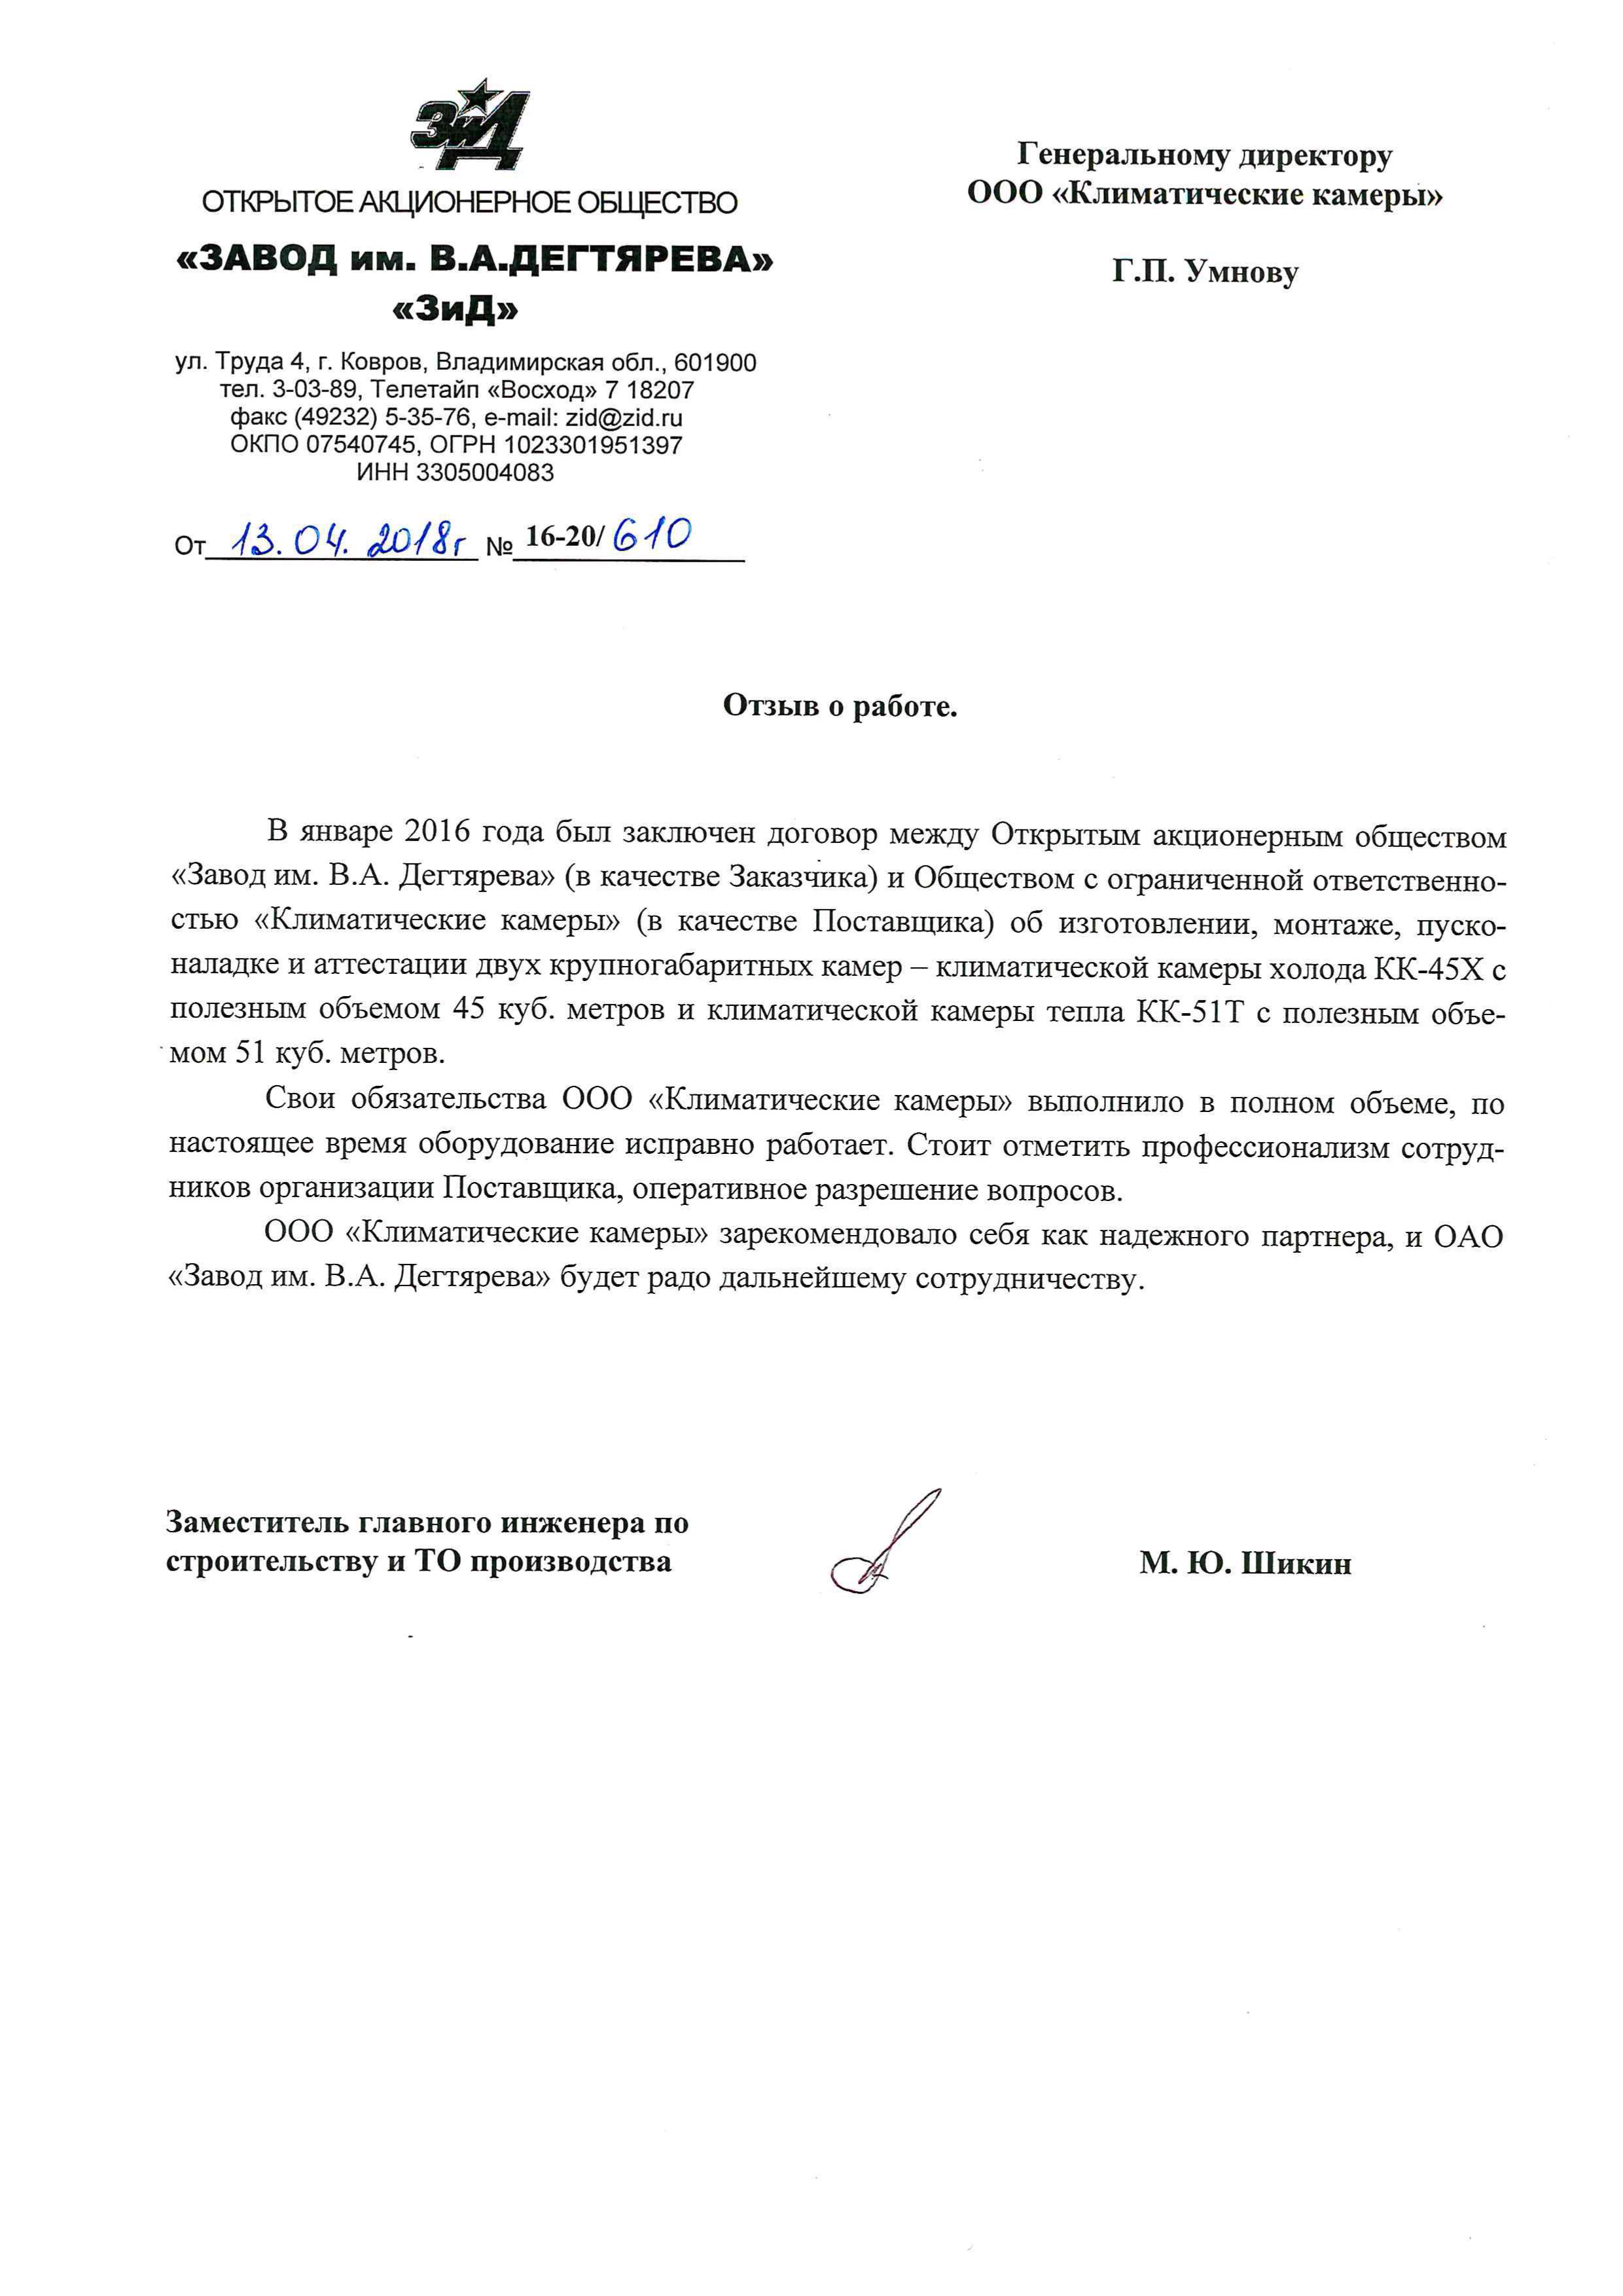 Рекомендательное письмо ОАО «Завод им.В.А.Дегтярева», апрель 2018 года.